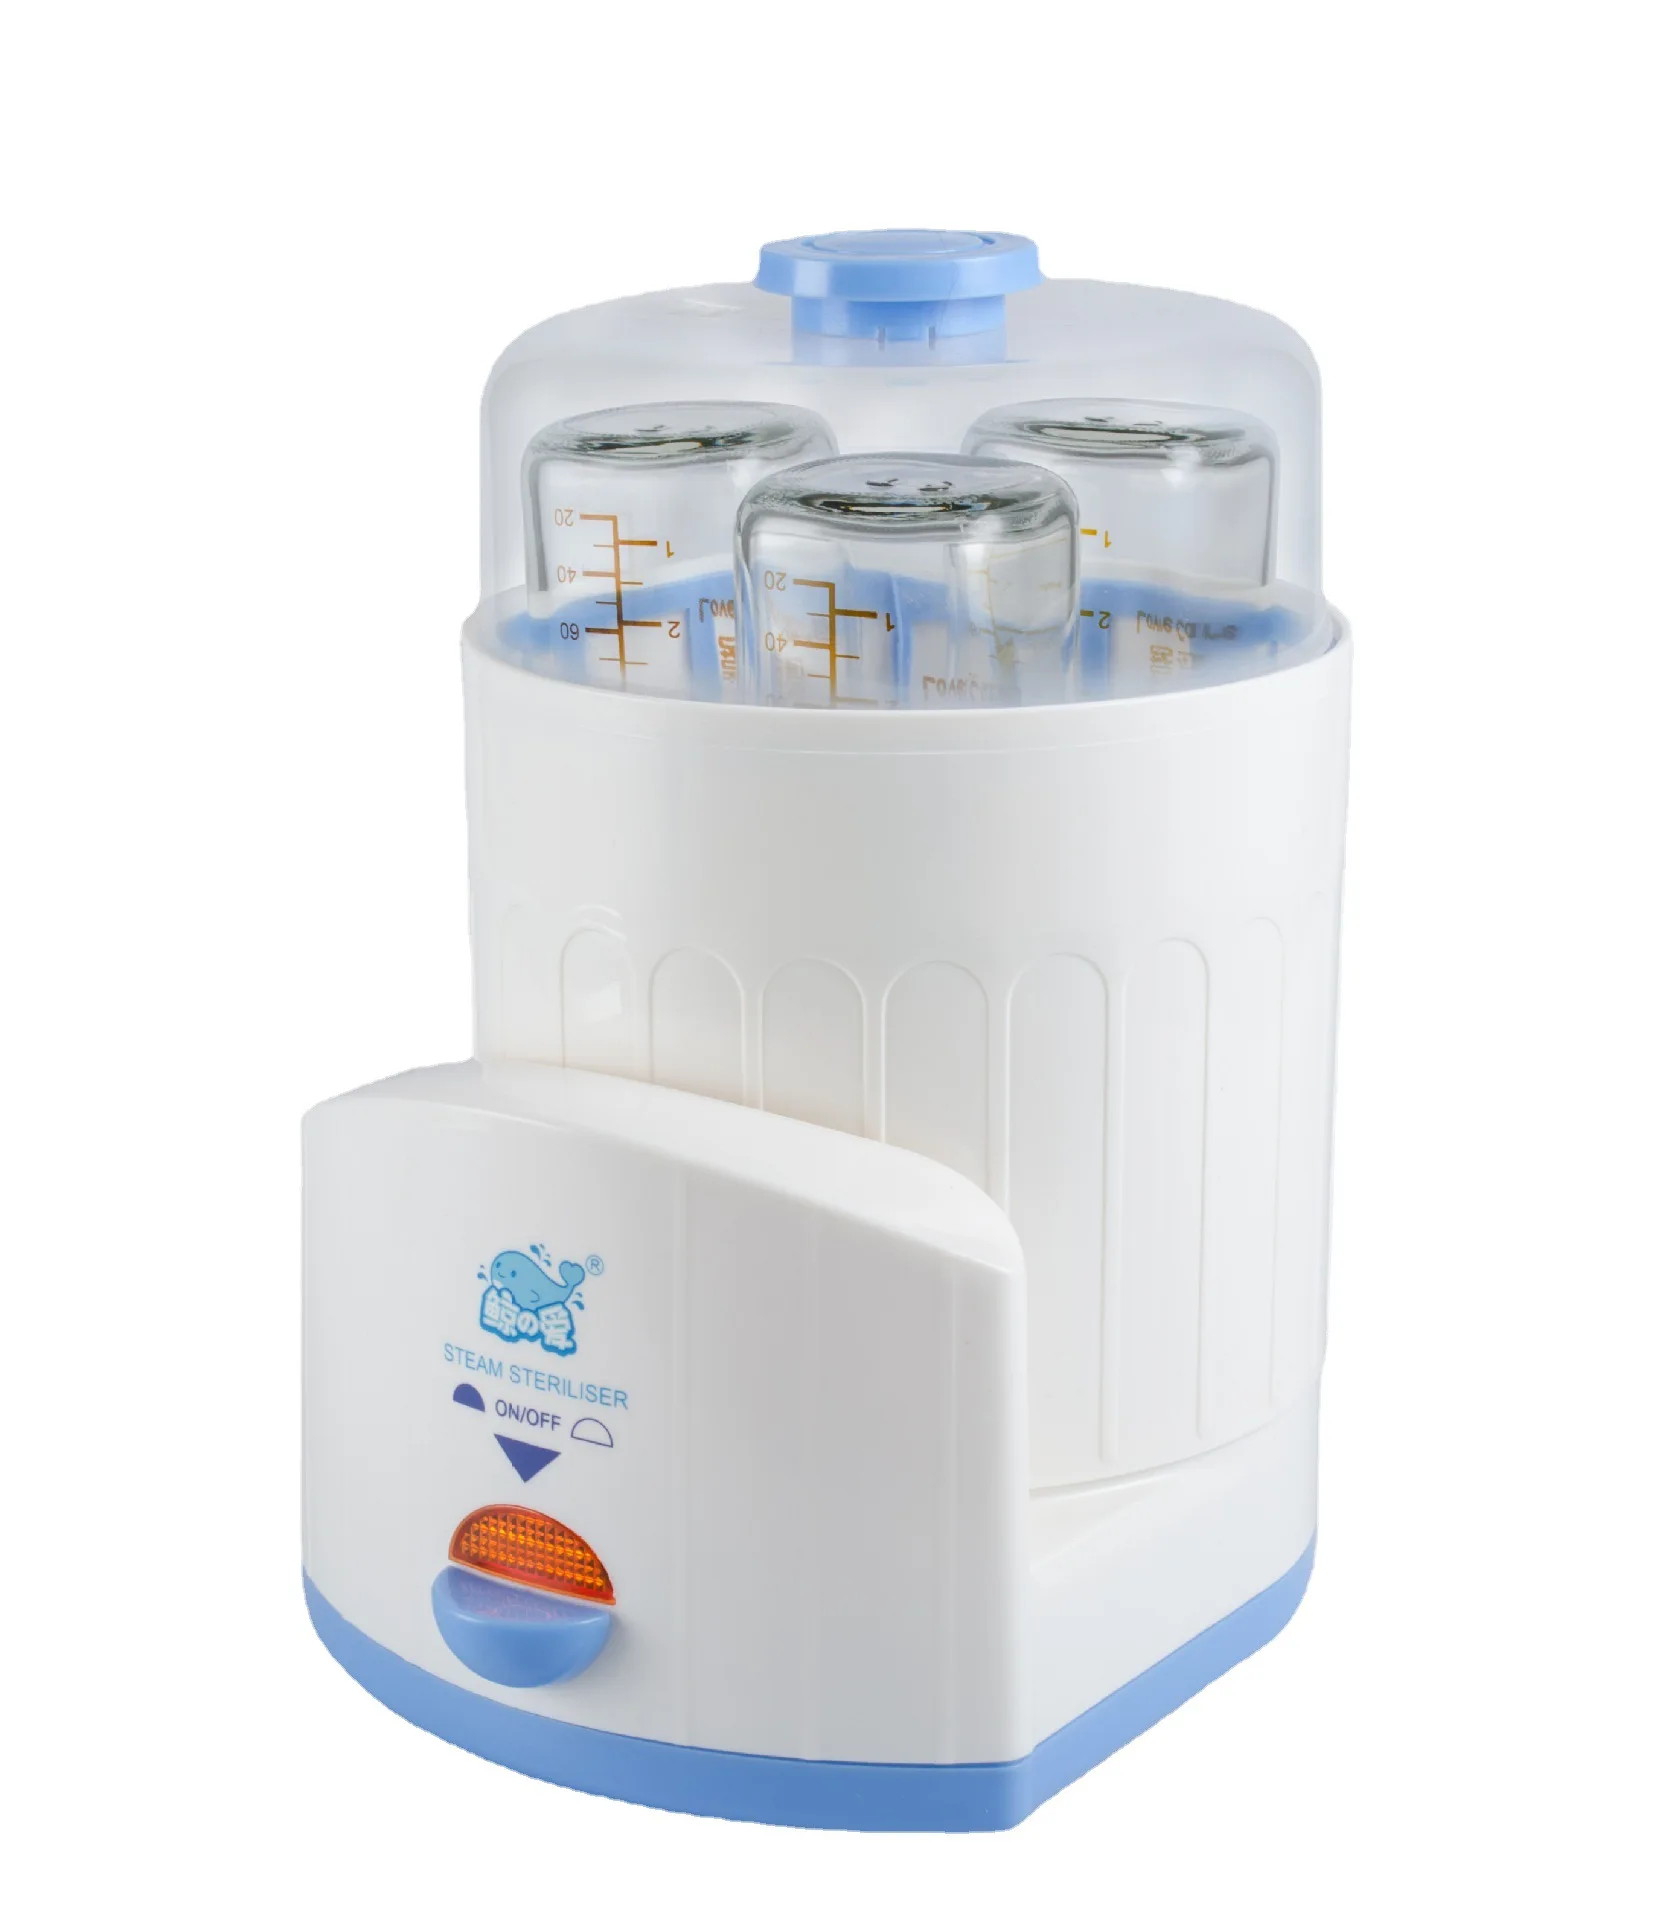 Esterilizador de biberón para bebés máquina de desinfección multifuncional de leche caliente calentada a vapor